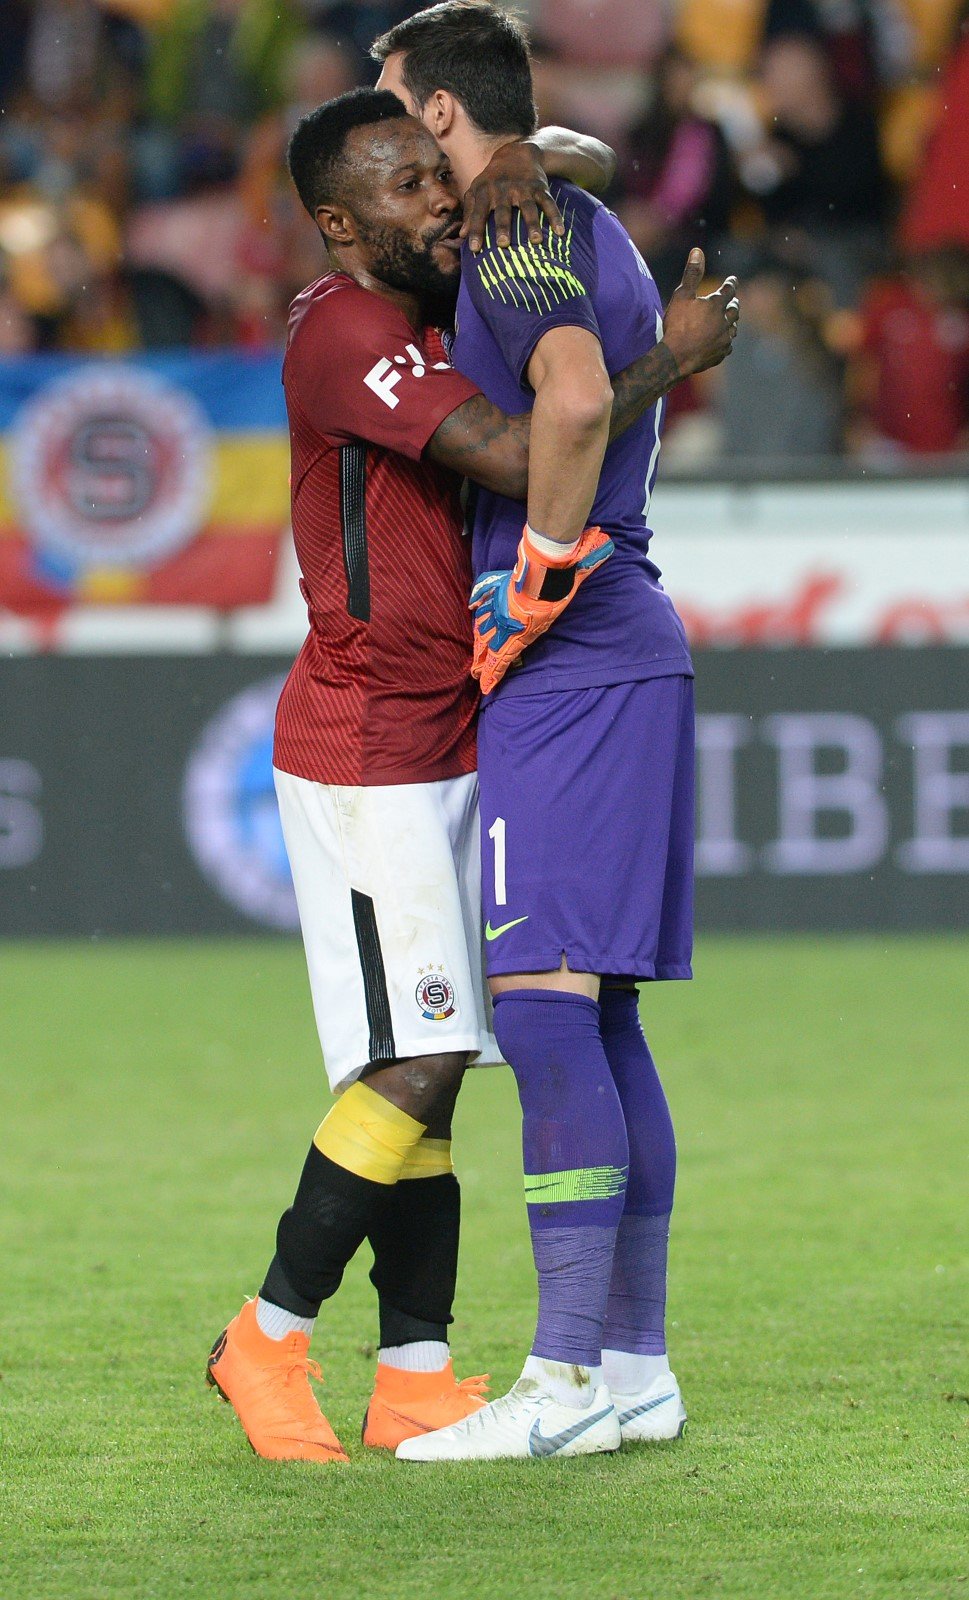 Fotbalisté Sparty Guélor Kanga a Florin Nita se objímají po domácí výhře 2:0 nad Duklou